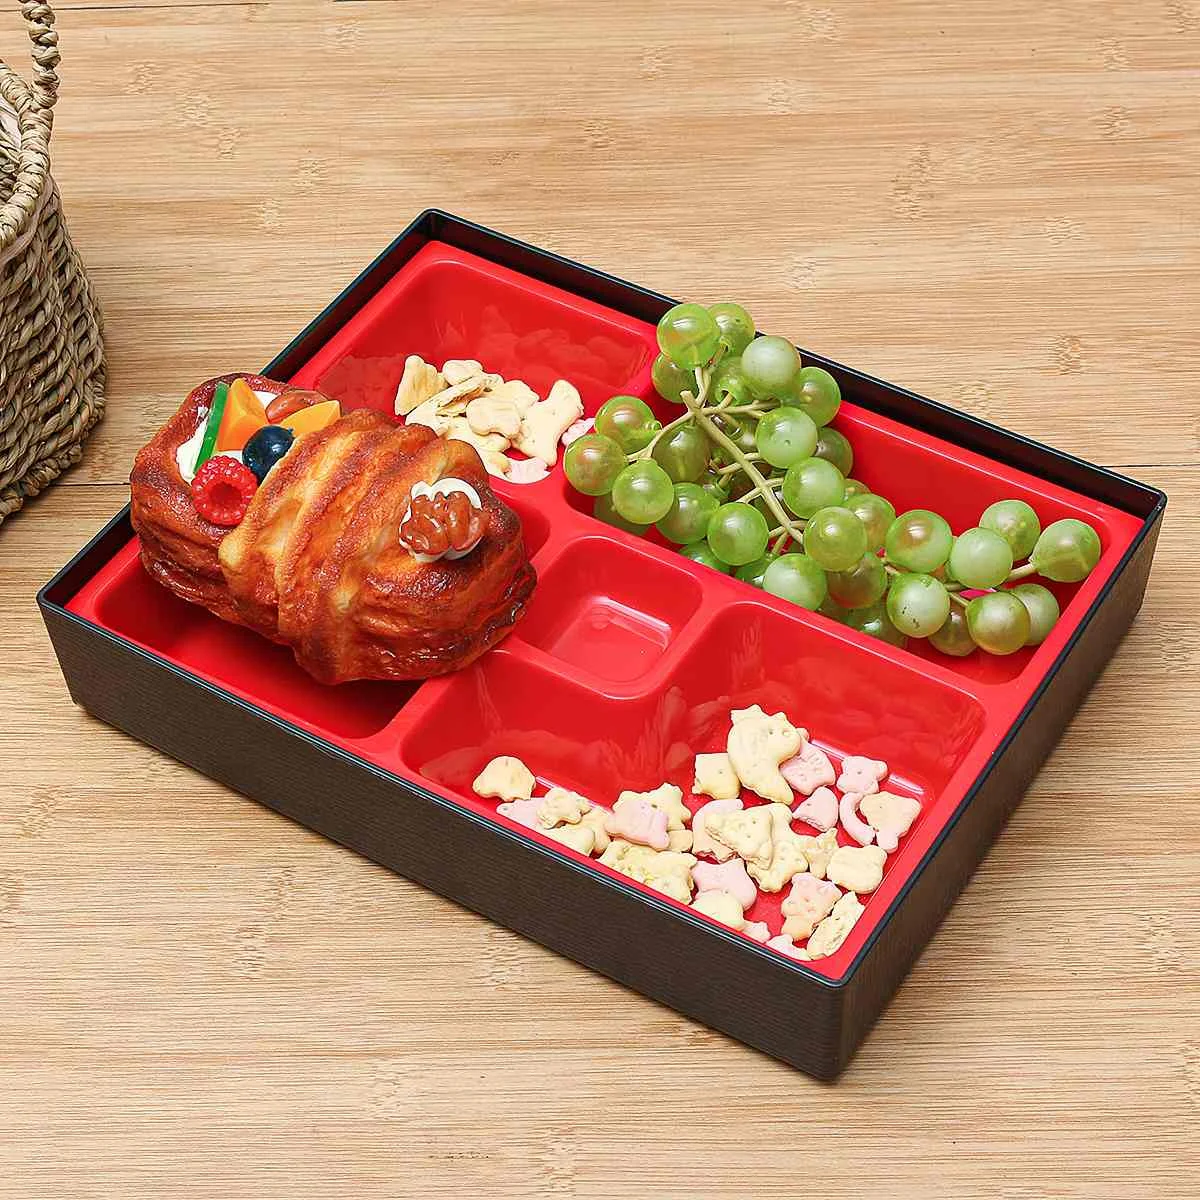 Бенто ланч бокс японский Стиль многоразовые рисовые суши питание коробка Кухня обед контейнер для хранения офиса школы переносная коробка для ланча